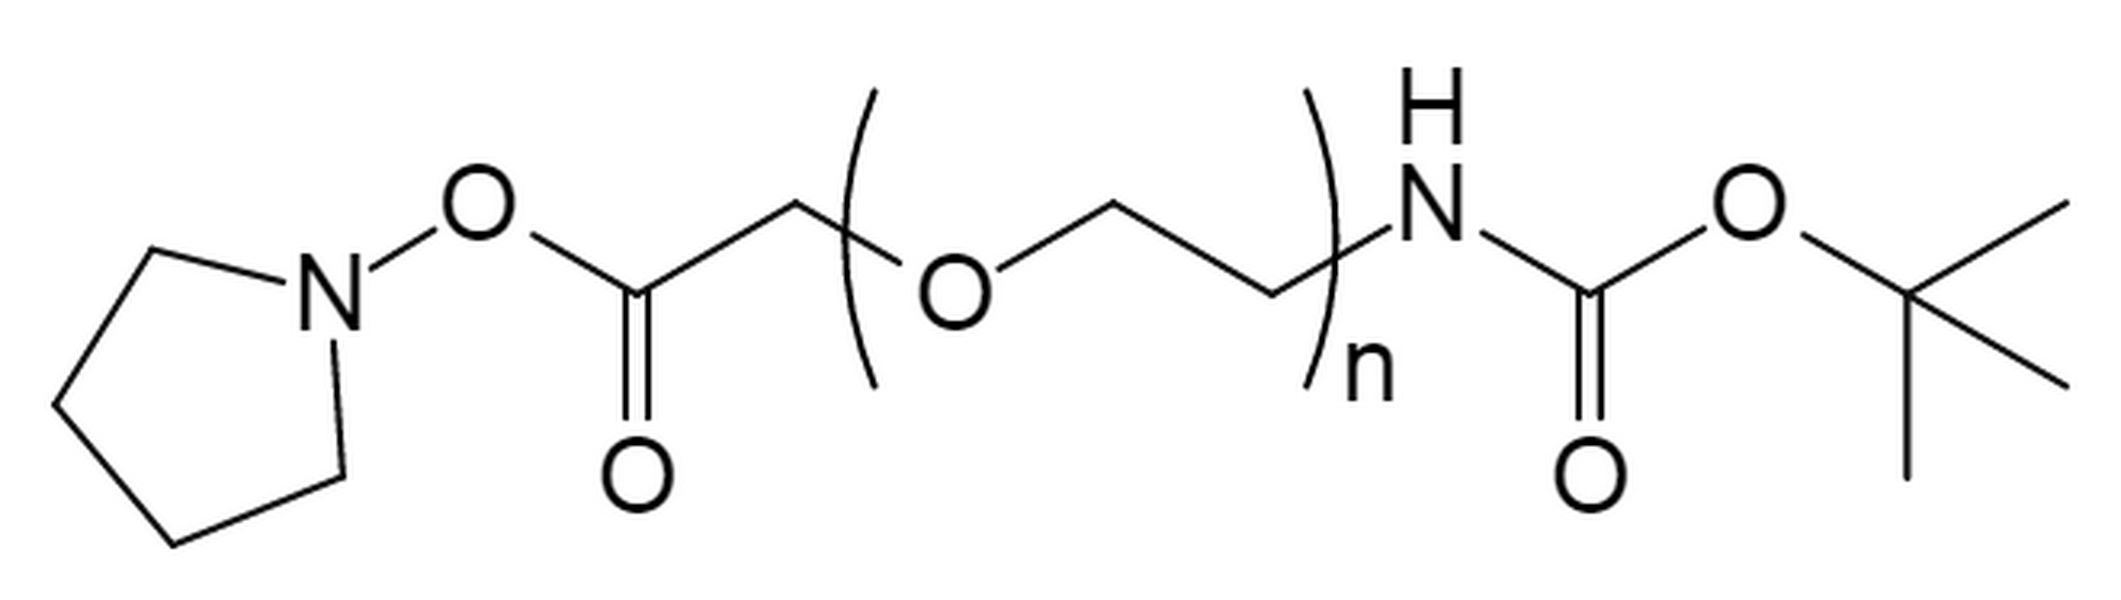 t-Boc Amine PEG Succinimidyl Carboxymethyl Ester,MW 7.5K